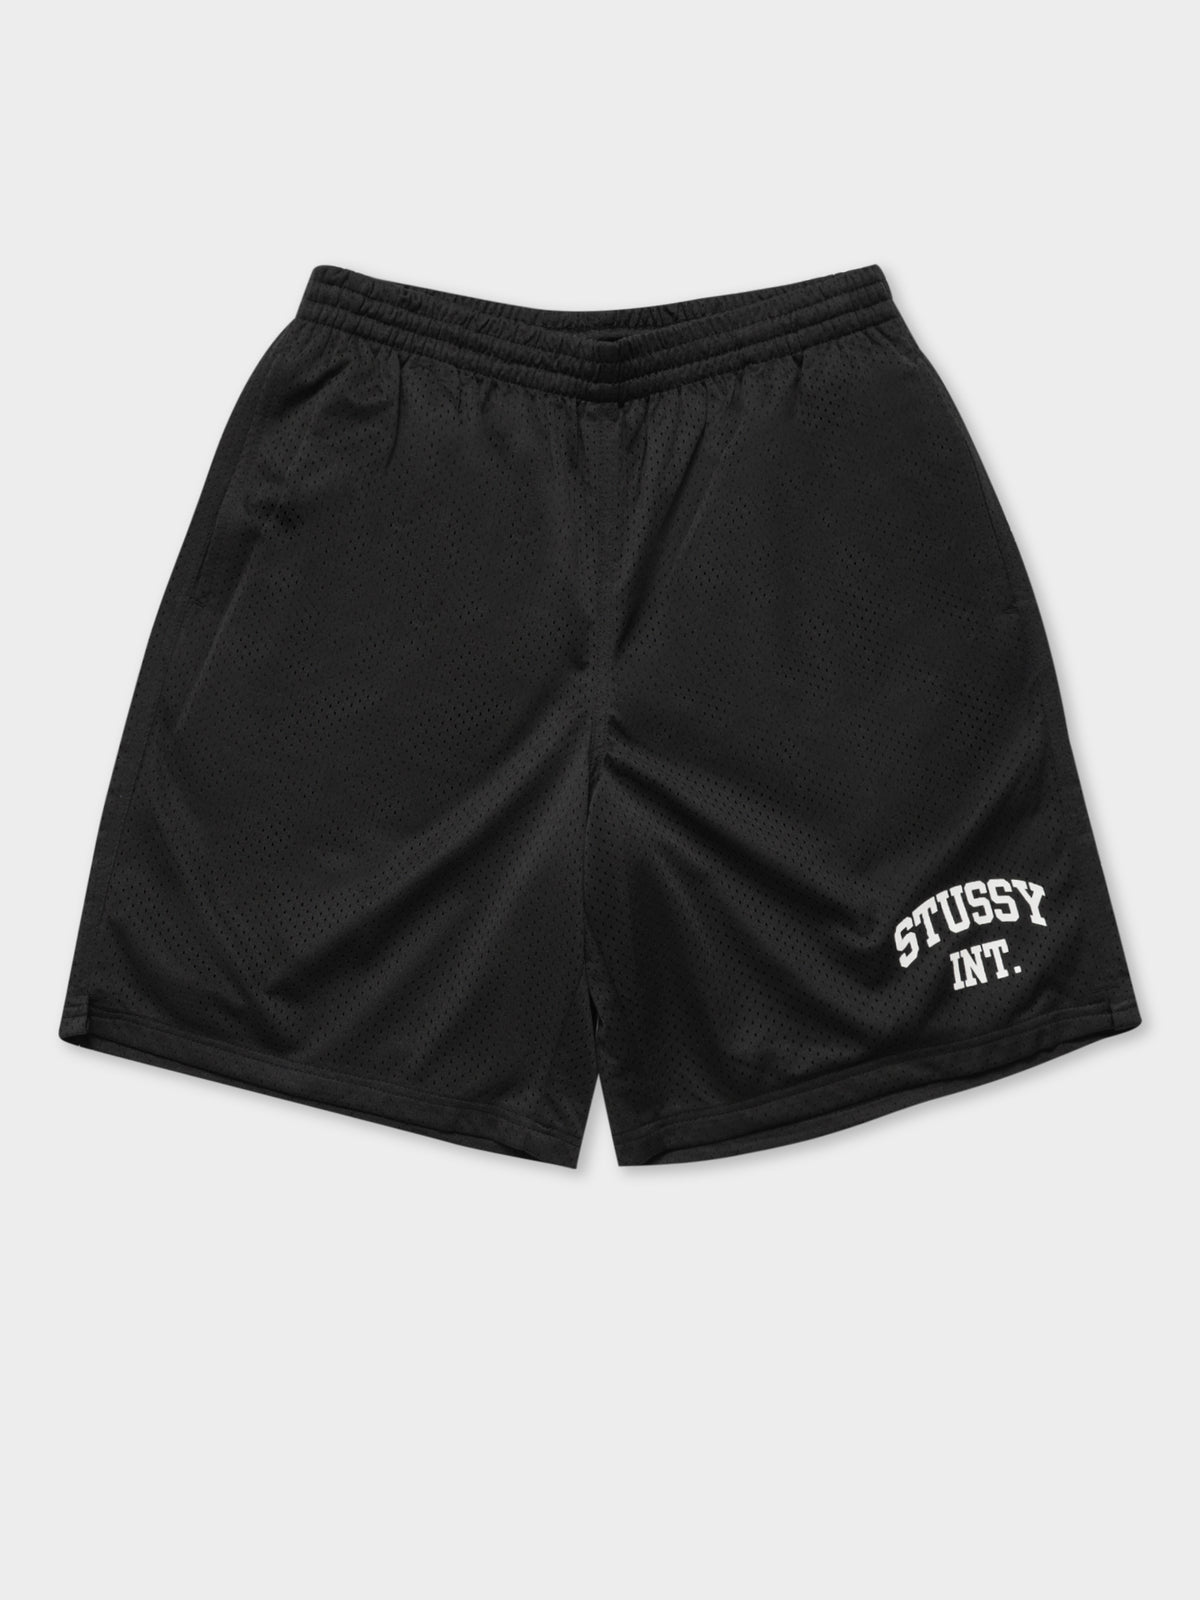 Stussy Athletics Mesh Shorts in Black